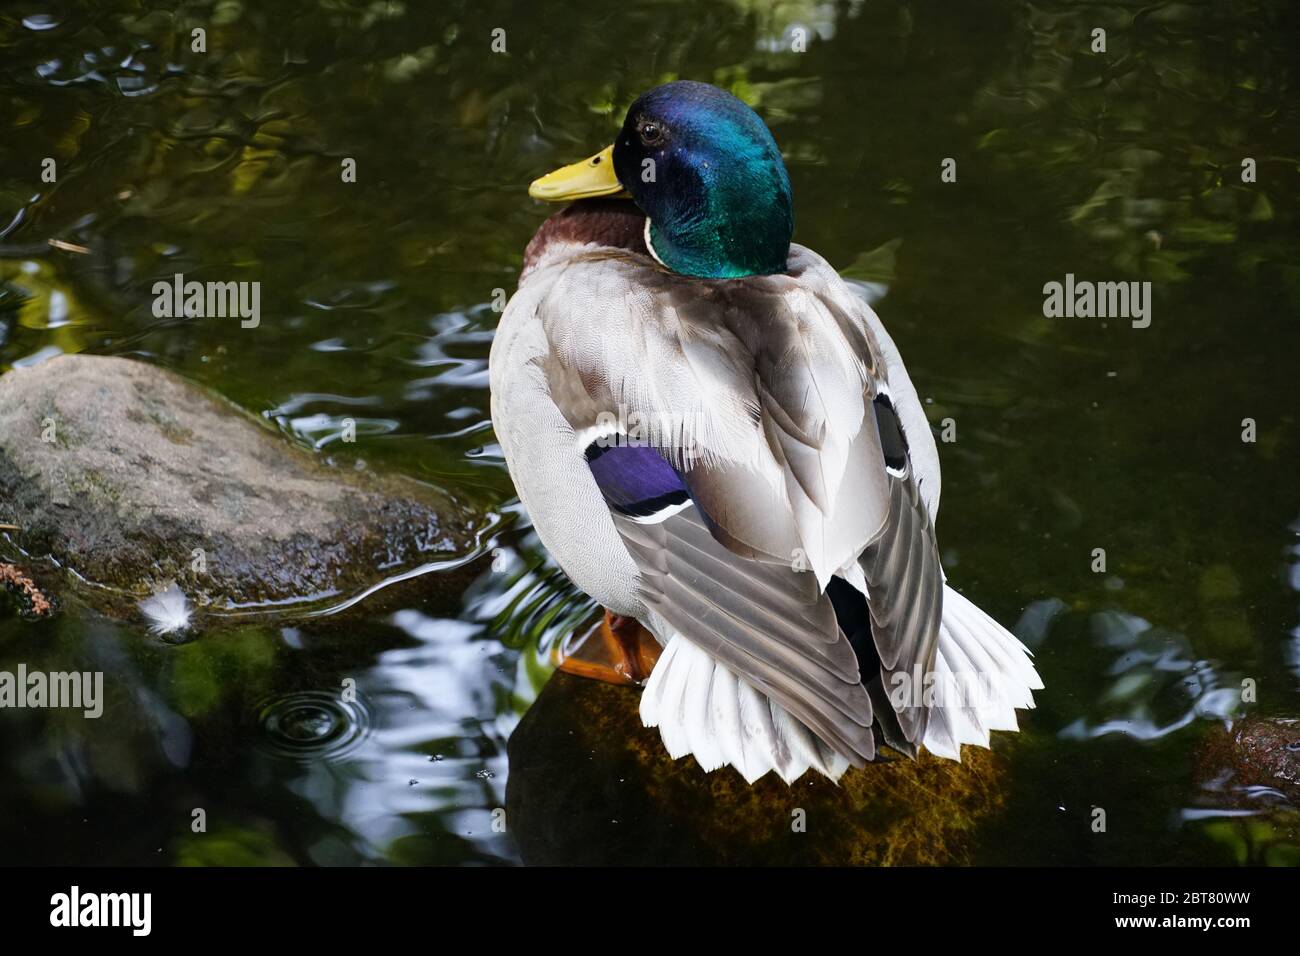 Belle photo de canard unique, colorée et reposant. Zoom avant, prise de vue en gros plan à main levée. Banque D'Images